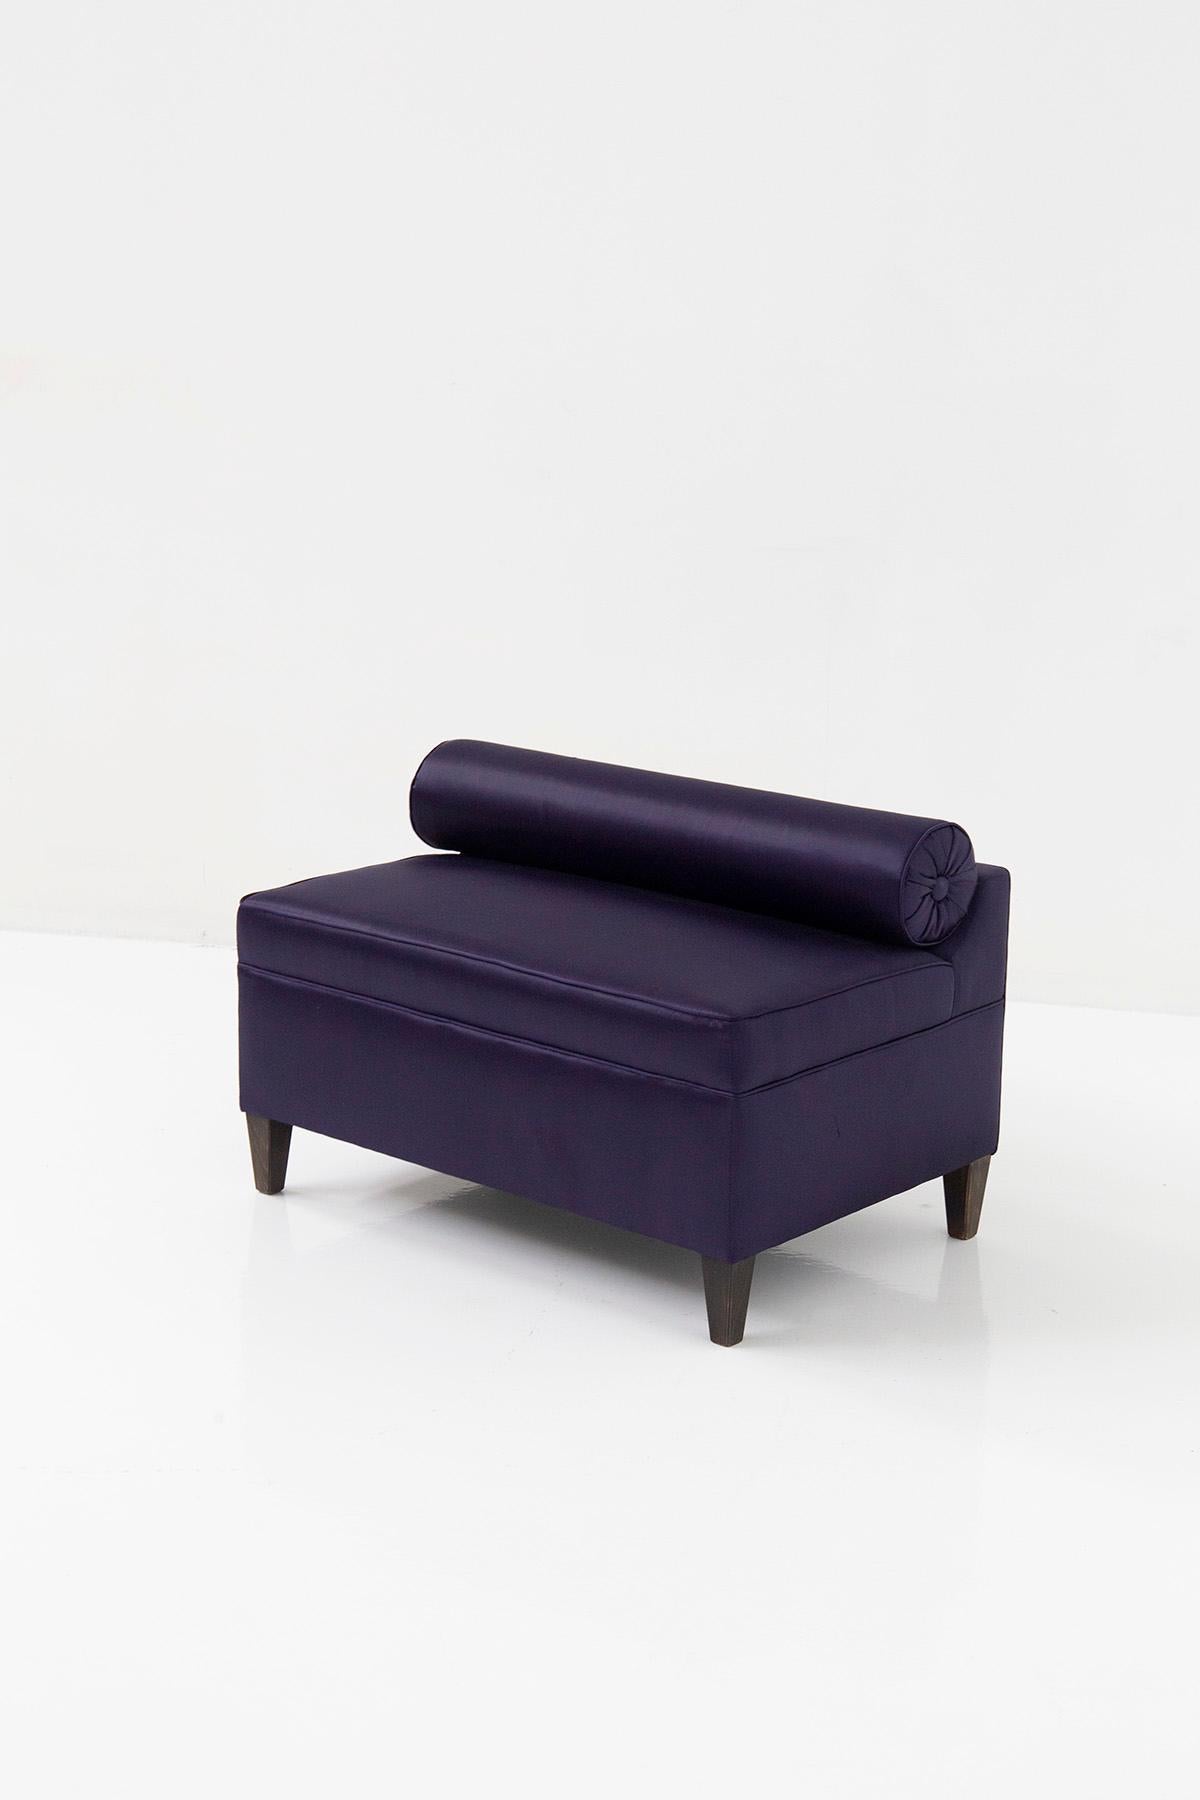 Voici un élégant banc ou canapé italien du XXe siècle, entièrement réalisé en tissu satiné violet. Cette pièce exquise respire l'élégance et est idéale pour meubler des salons excentriques avec un style classique et glamour. En ajoutant ce canapé à